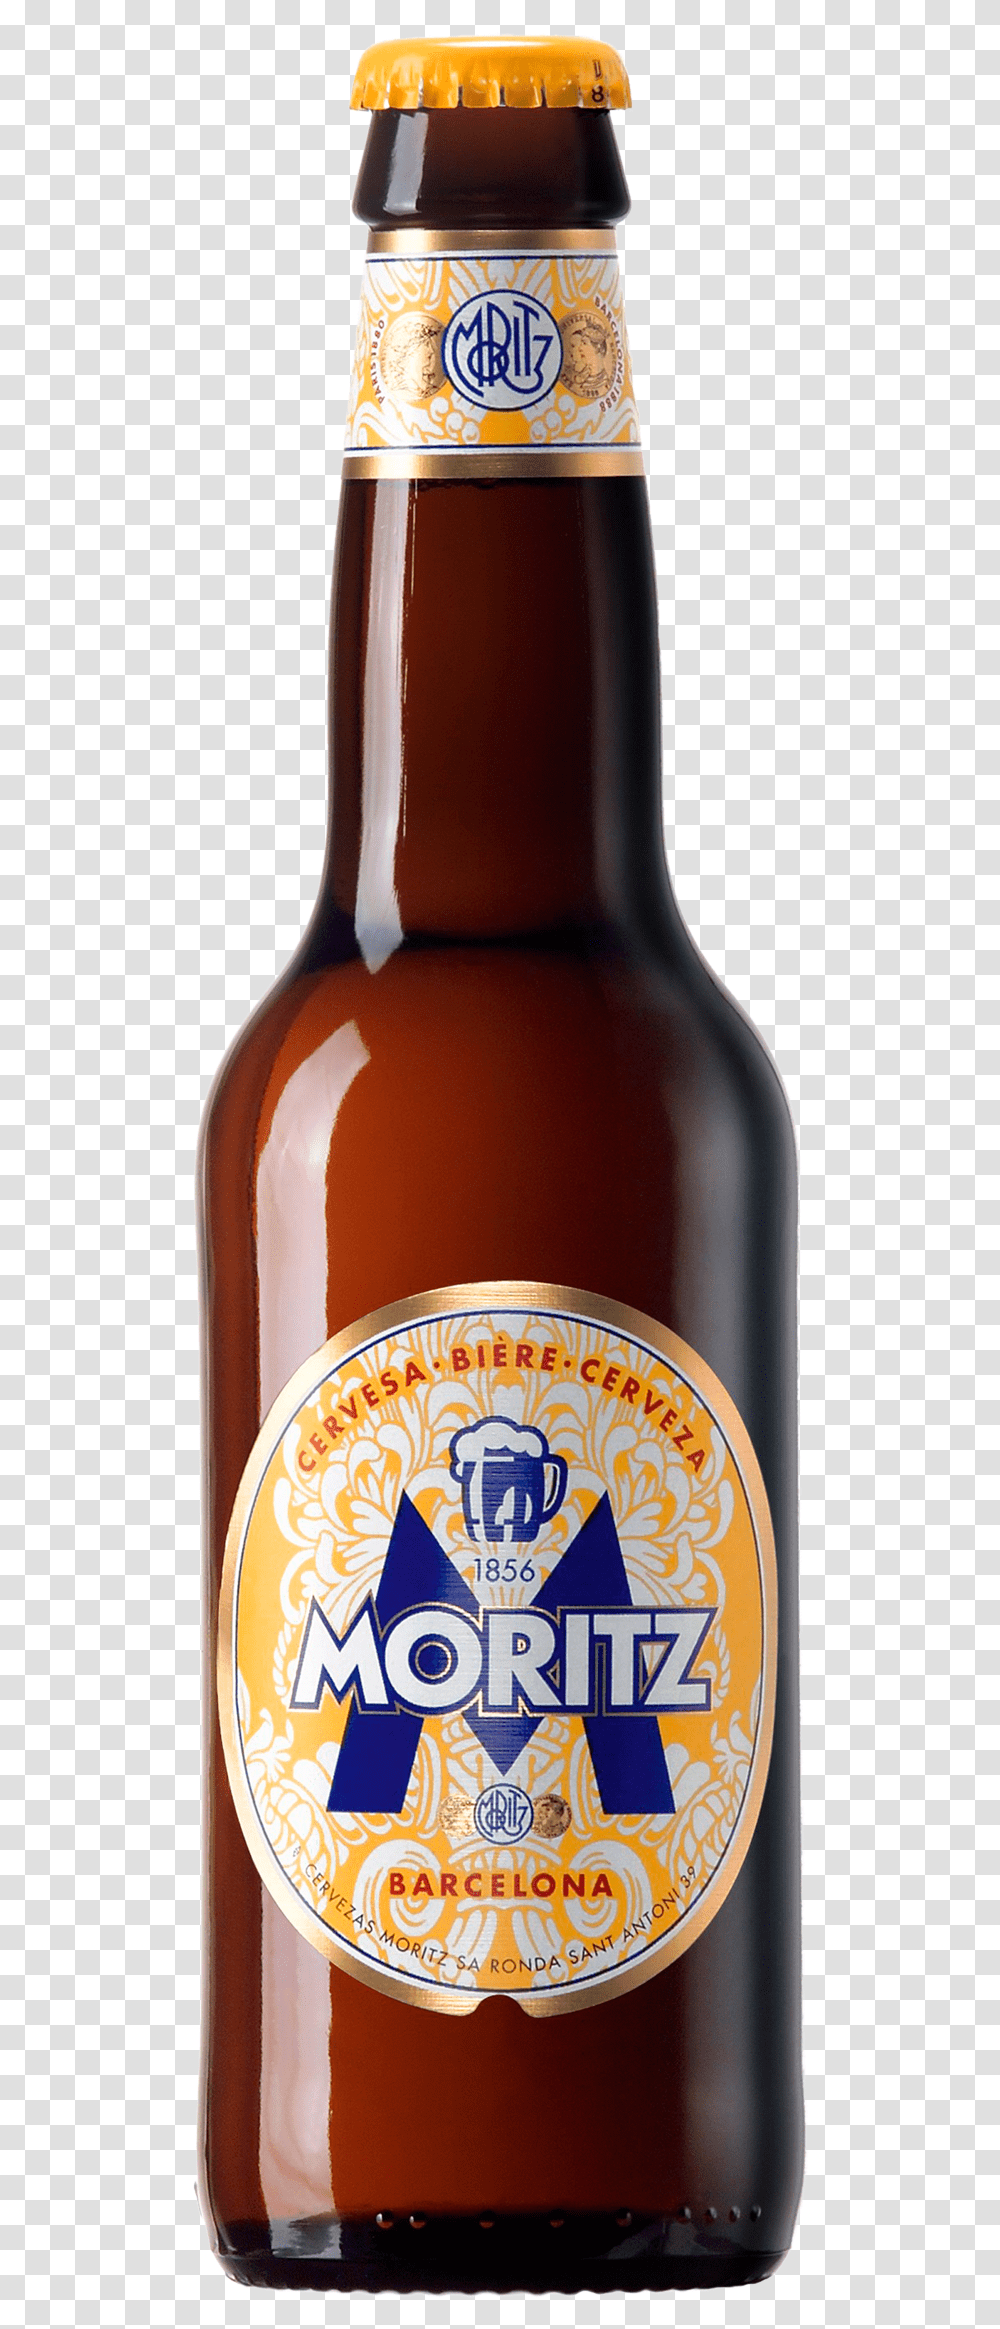 Moritz Beer, Alcohol, Beverage, Drink, Bottle Transparent Png